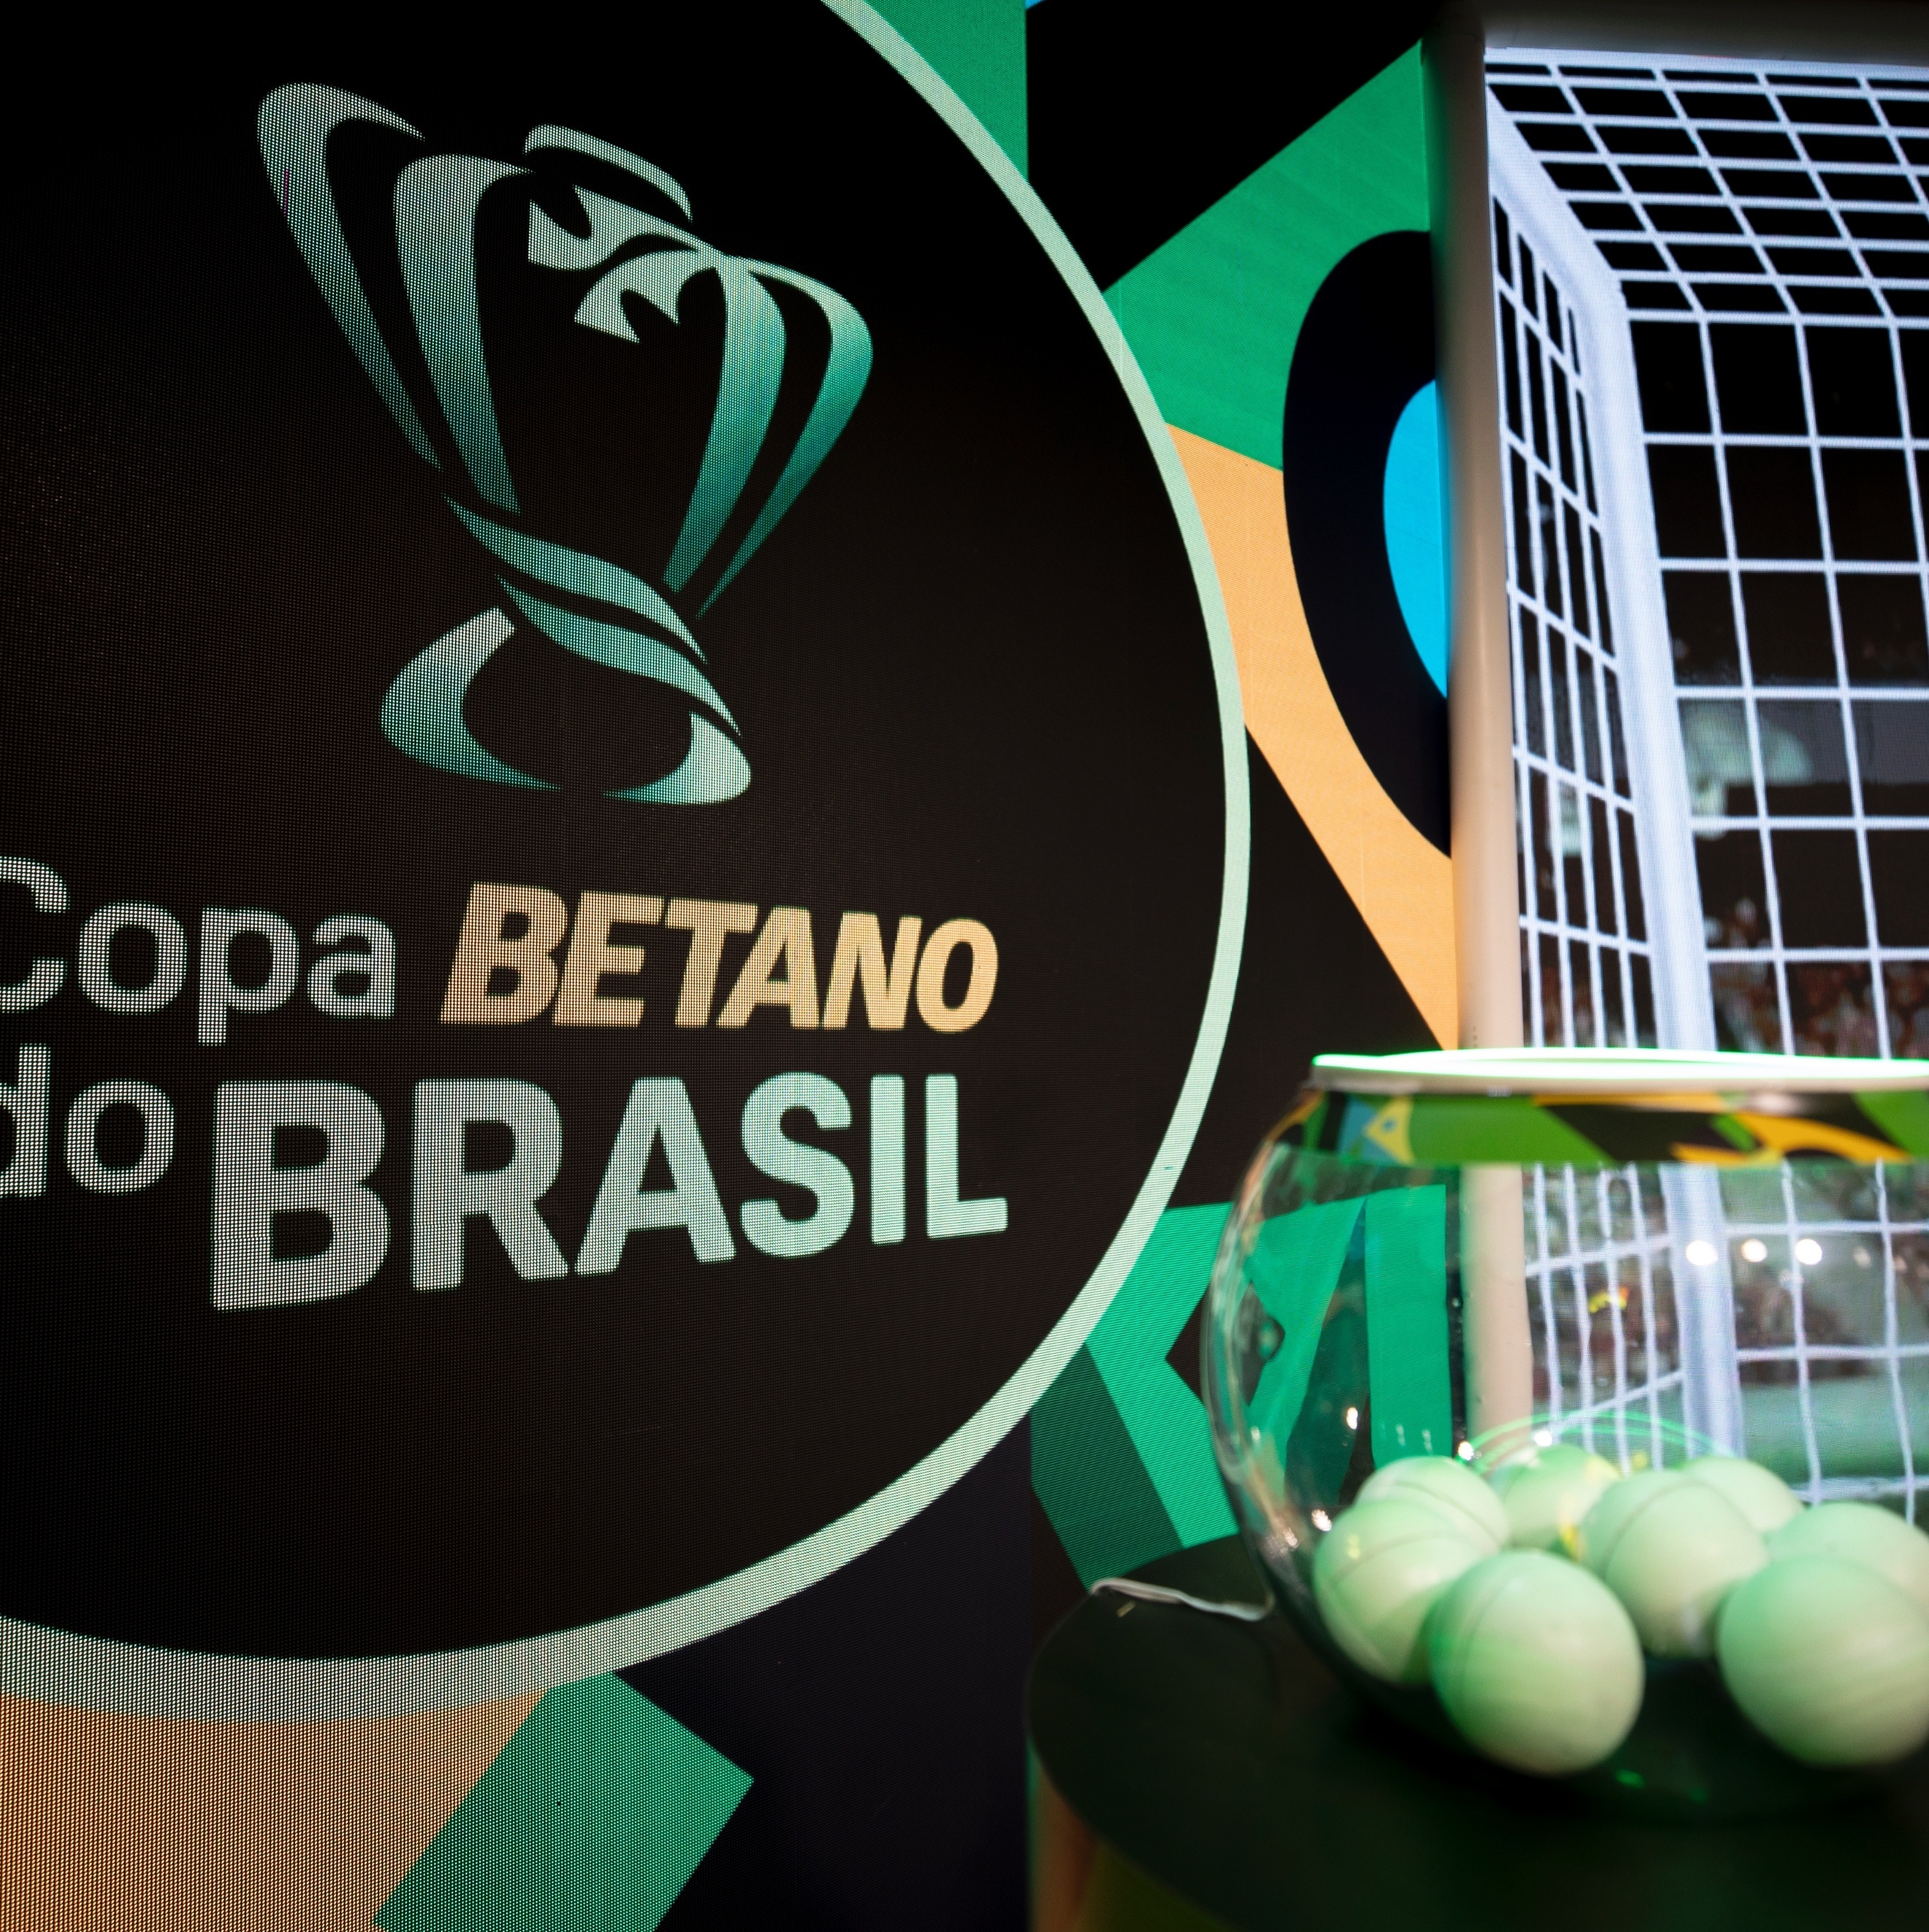 Oitavas de final da Copa do Brasil 2023: veja data e hora dos jogos -  Campos 24 Horas